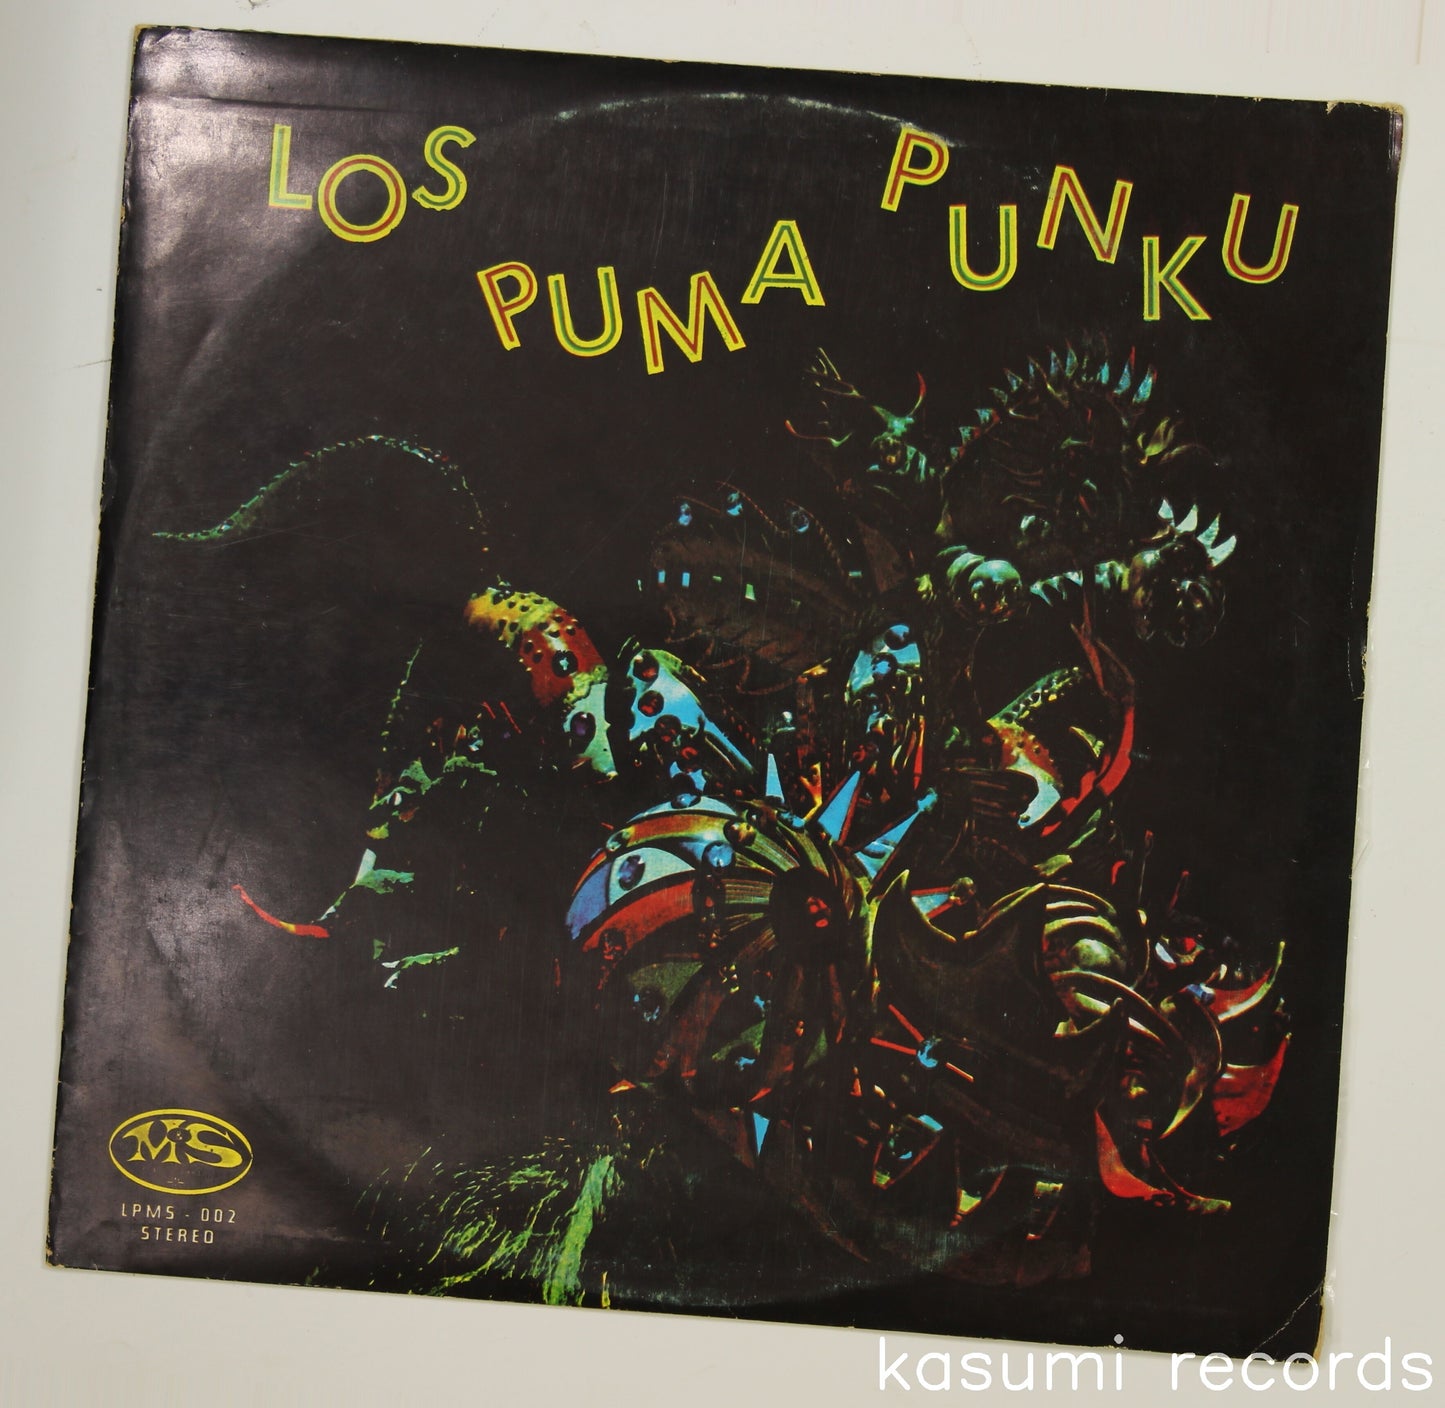 Los Puma Punku / Los Puma Punku